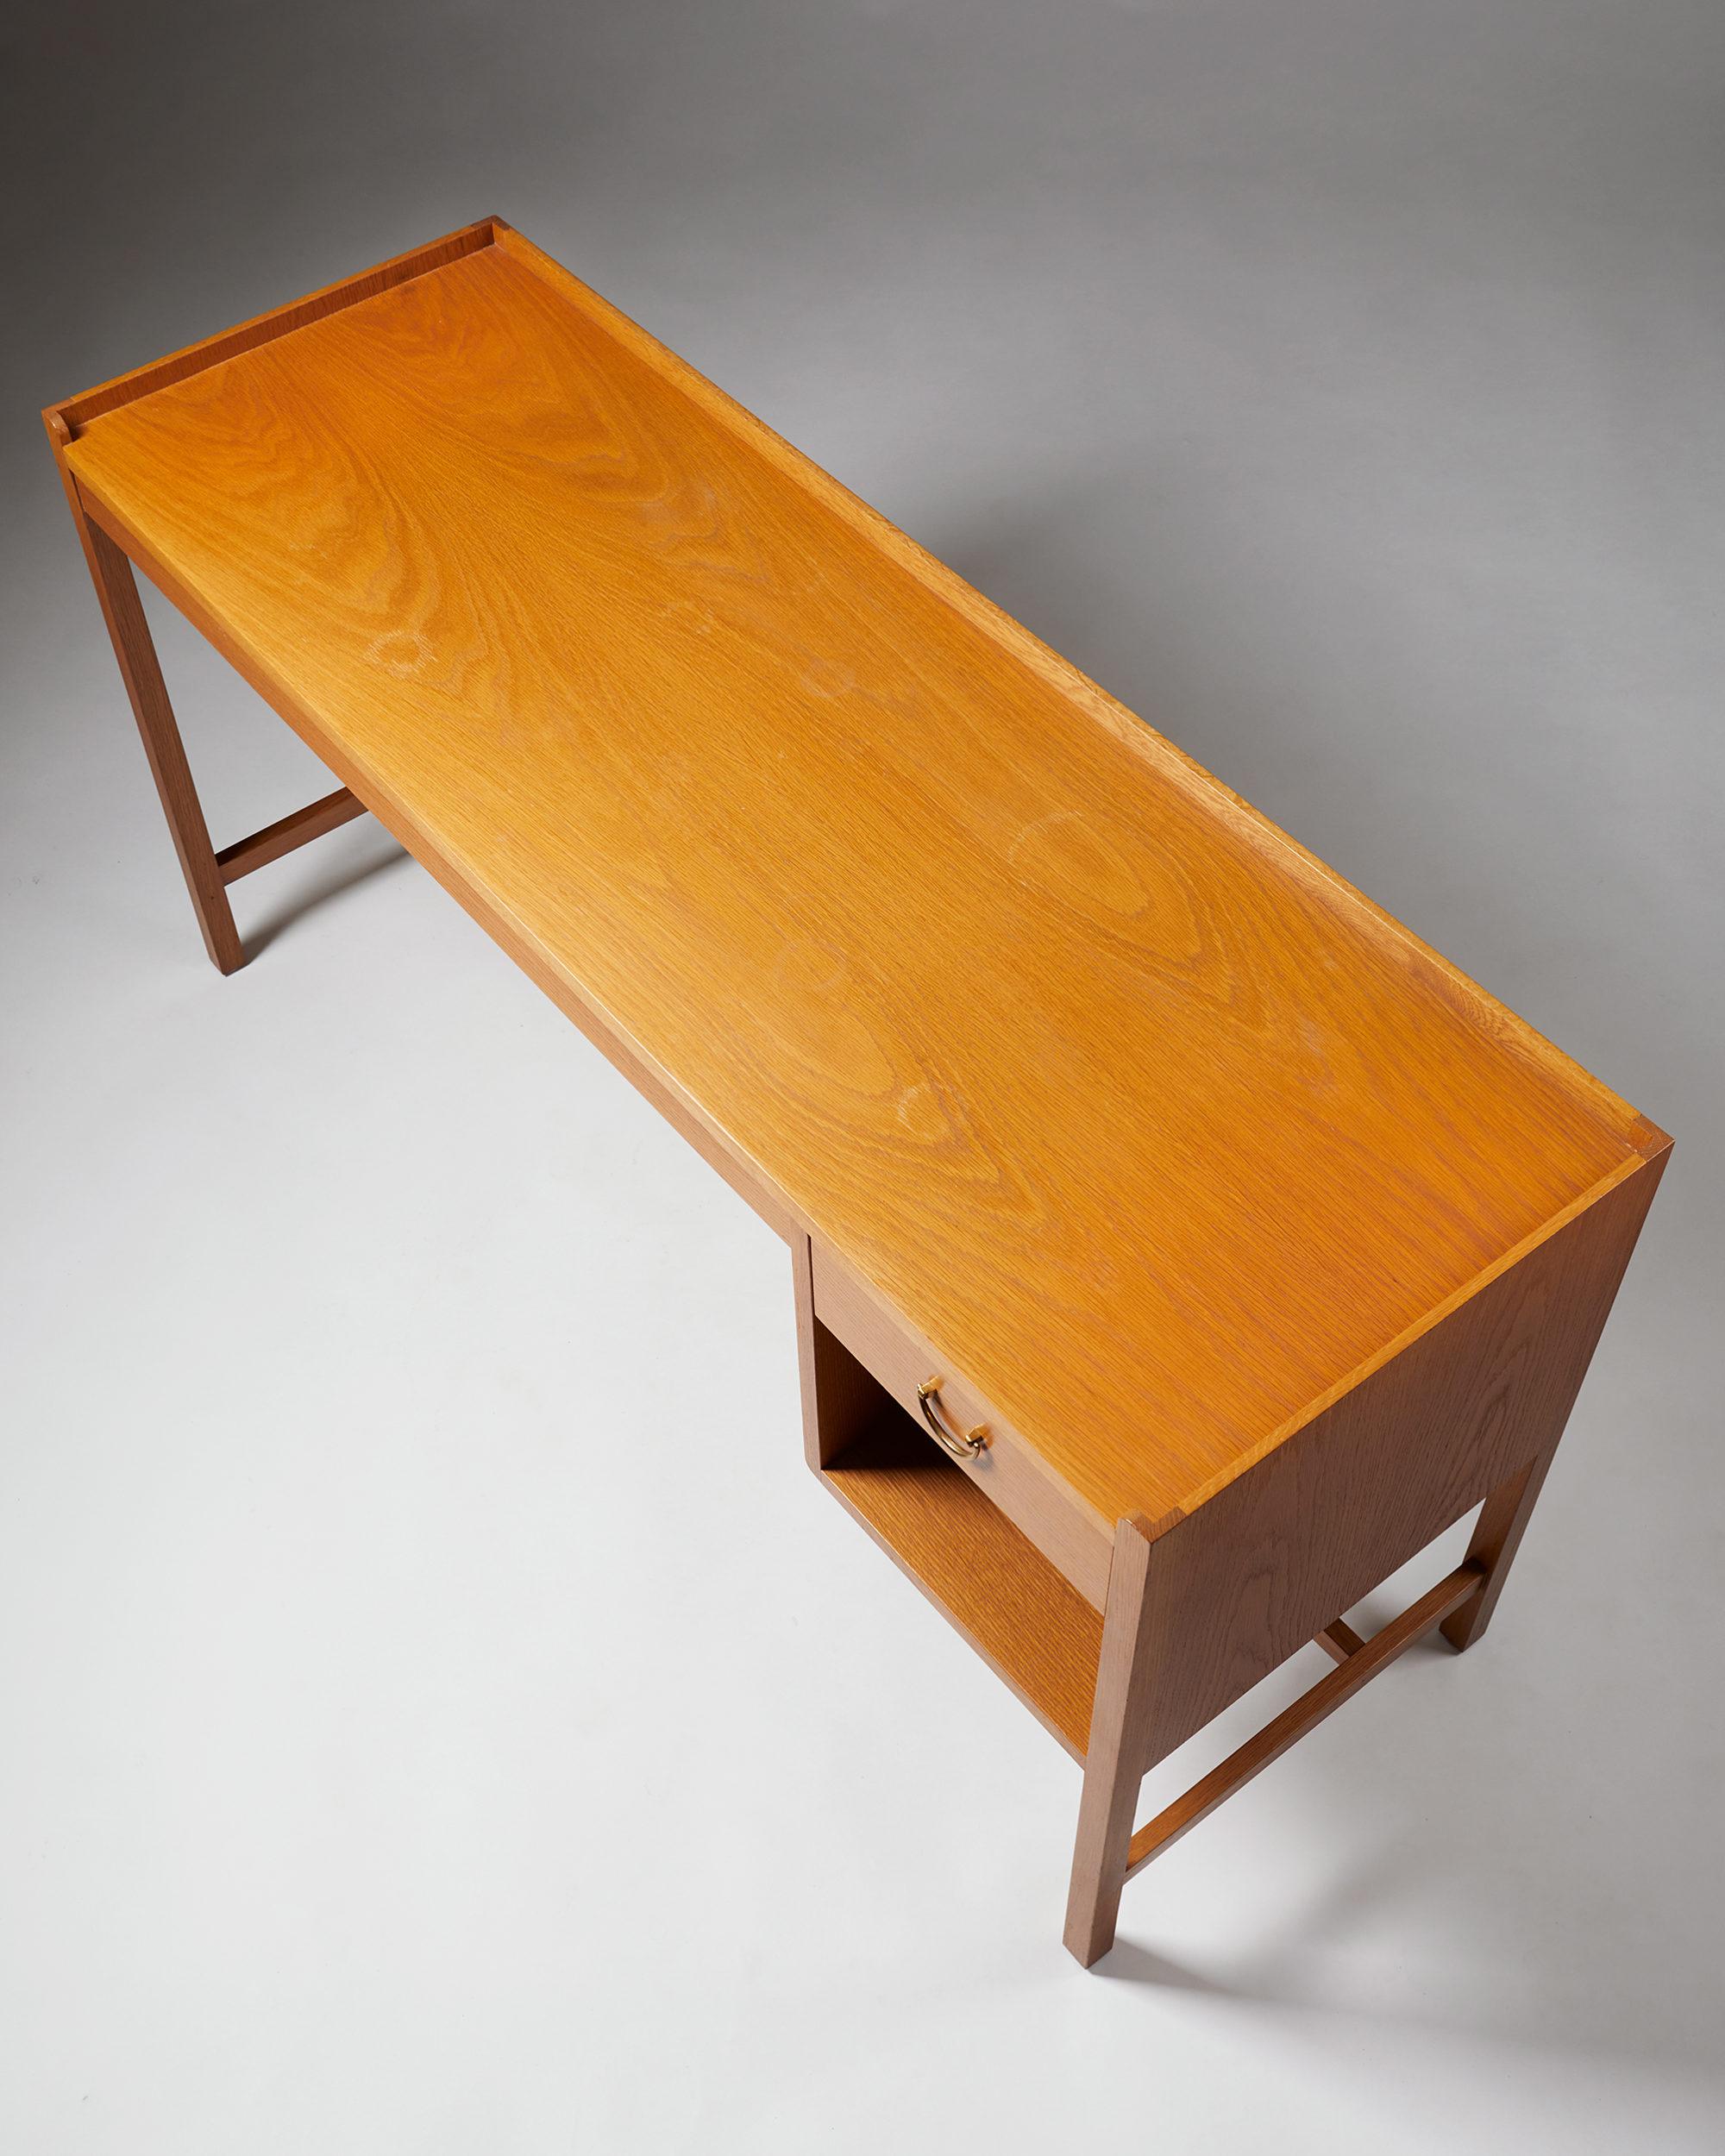 Mid-20th Century Desk Designed by Josef Frank for Svenskt Tenn